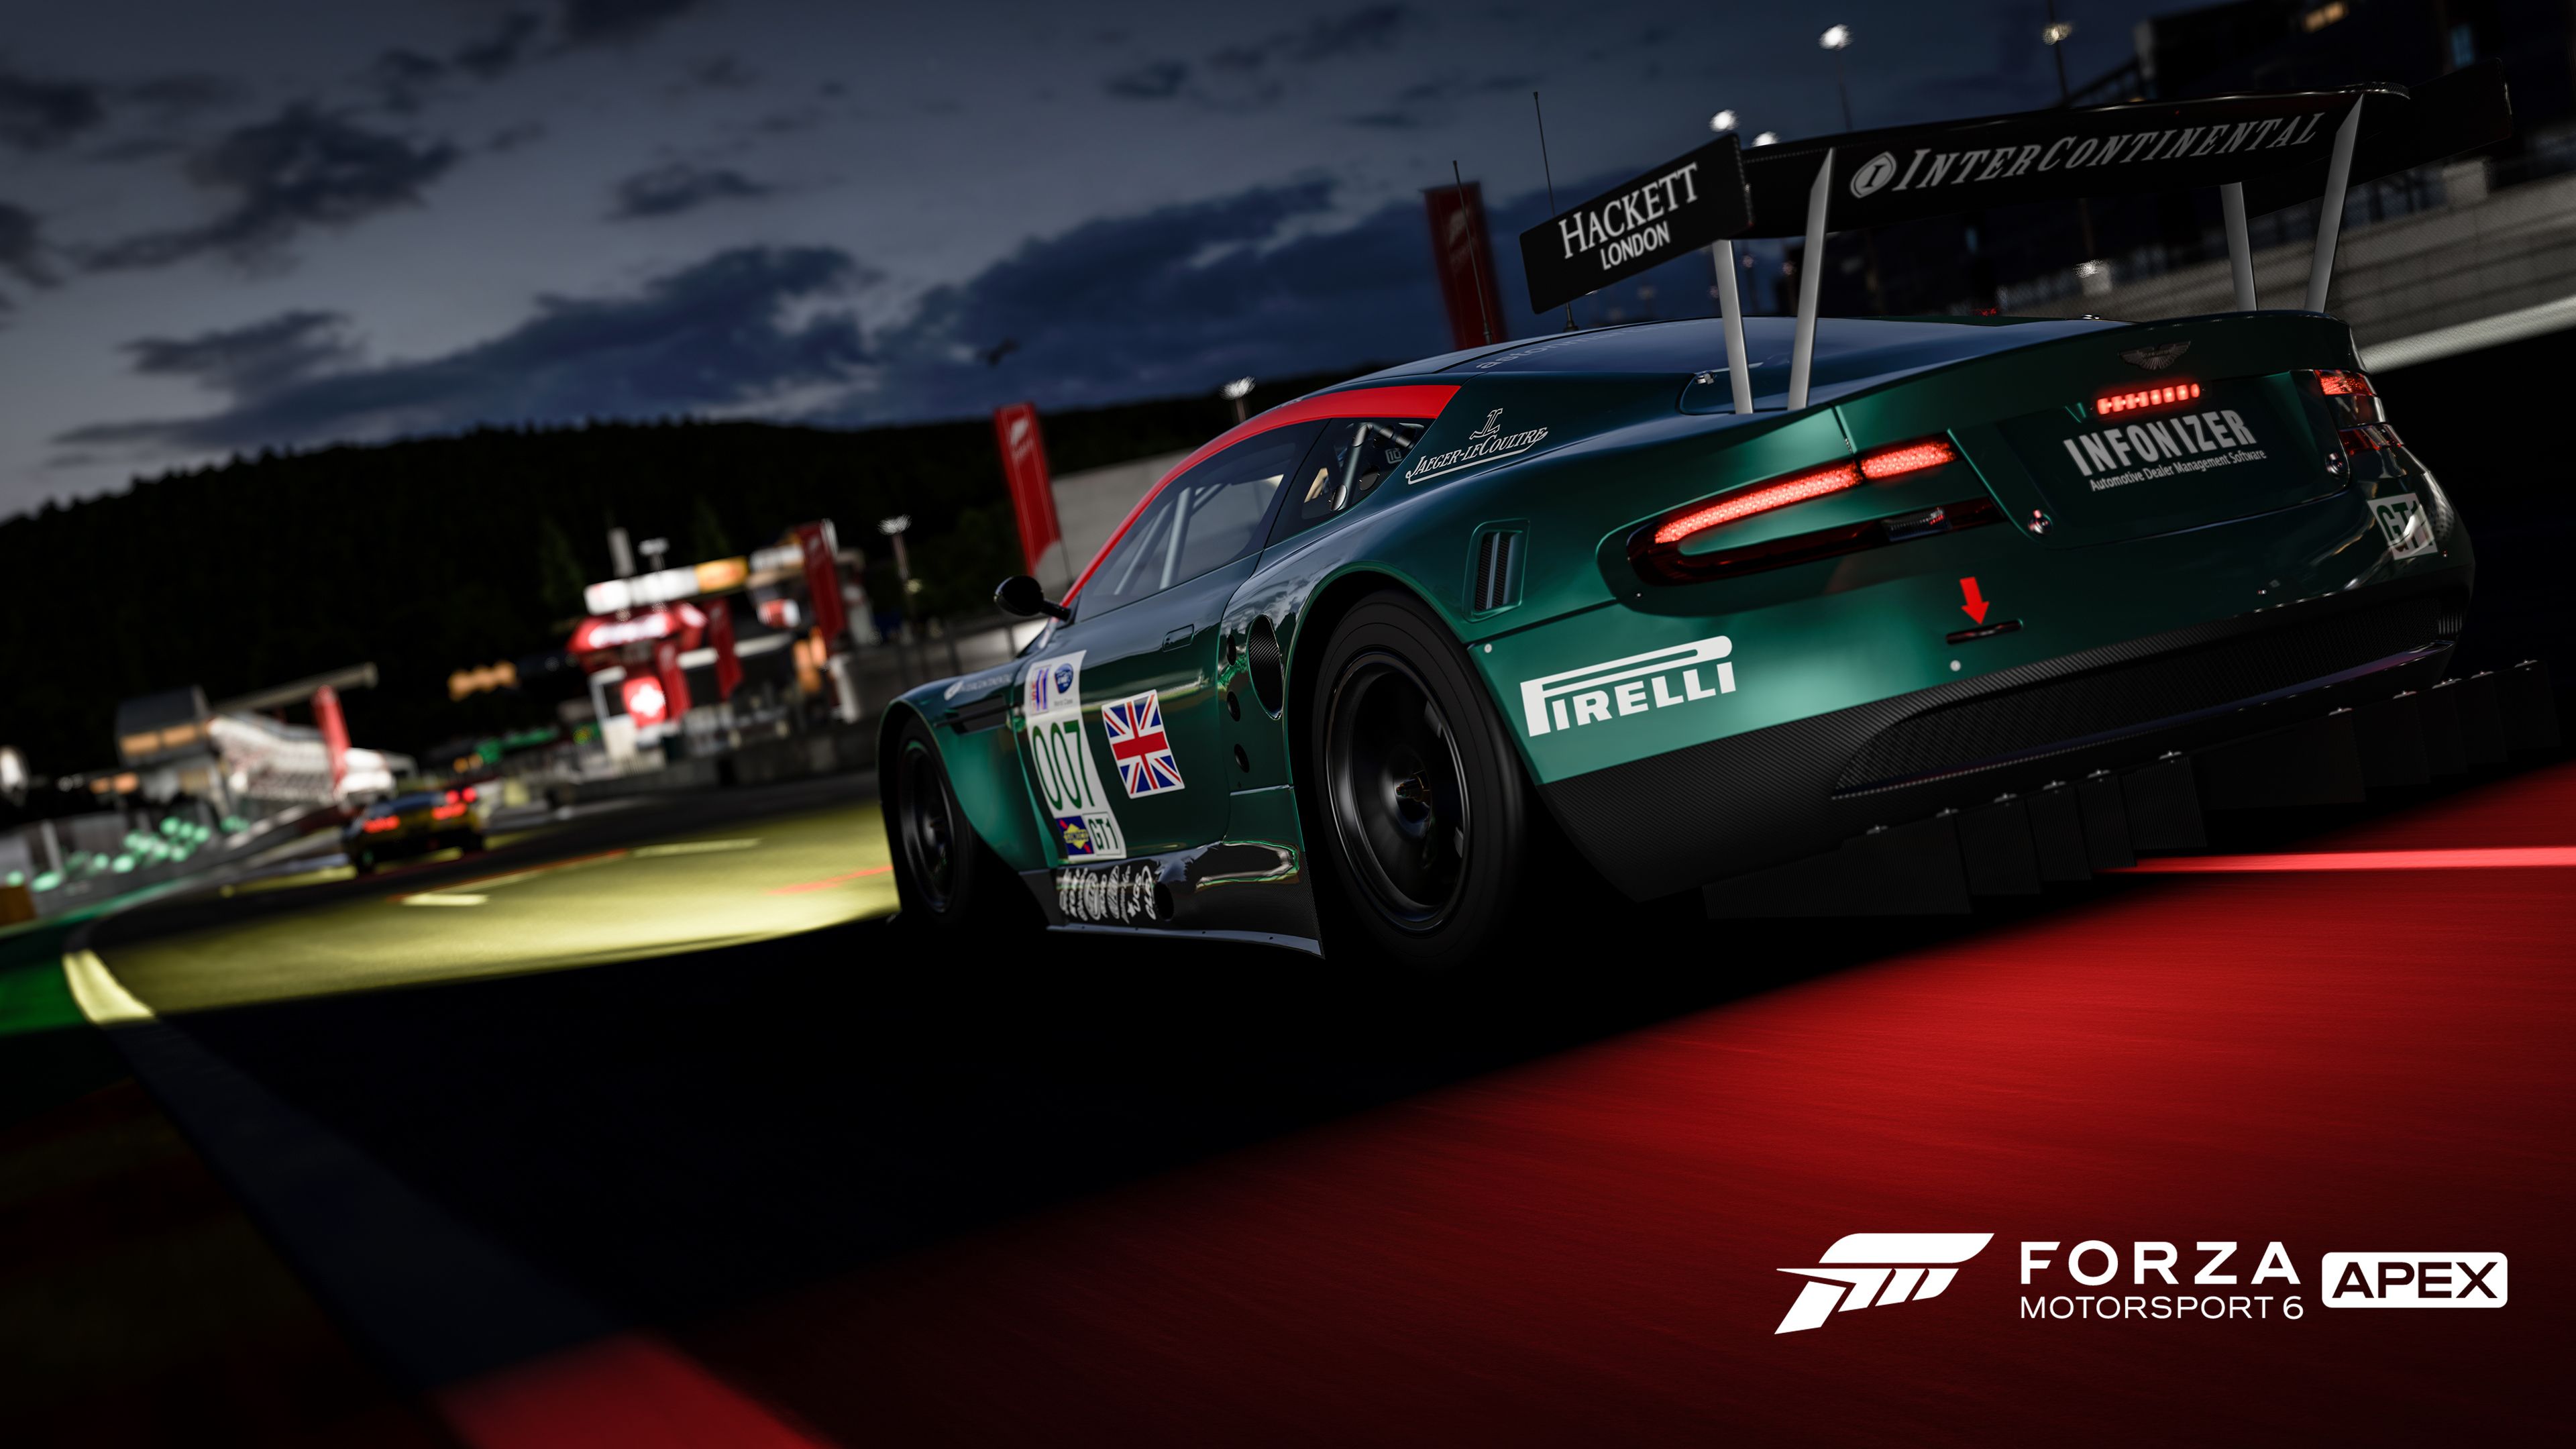 Télécharger des fonds d'écran Forza Motorsport 6 : Apex HD